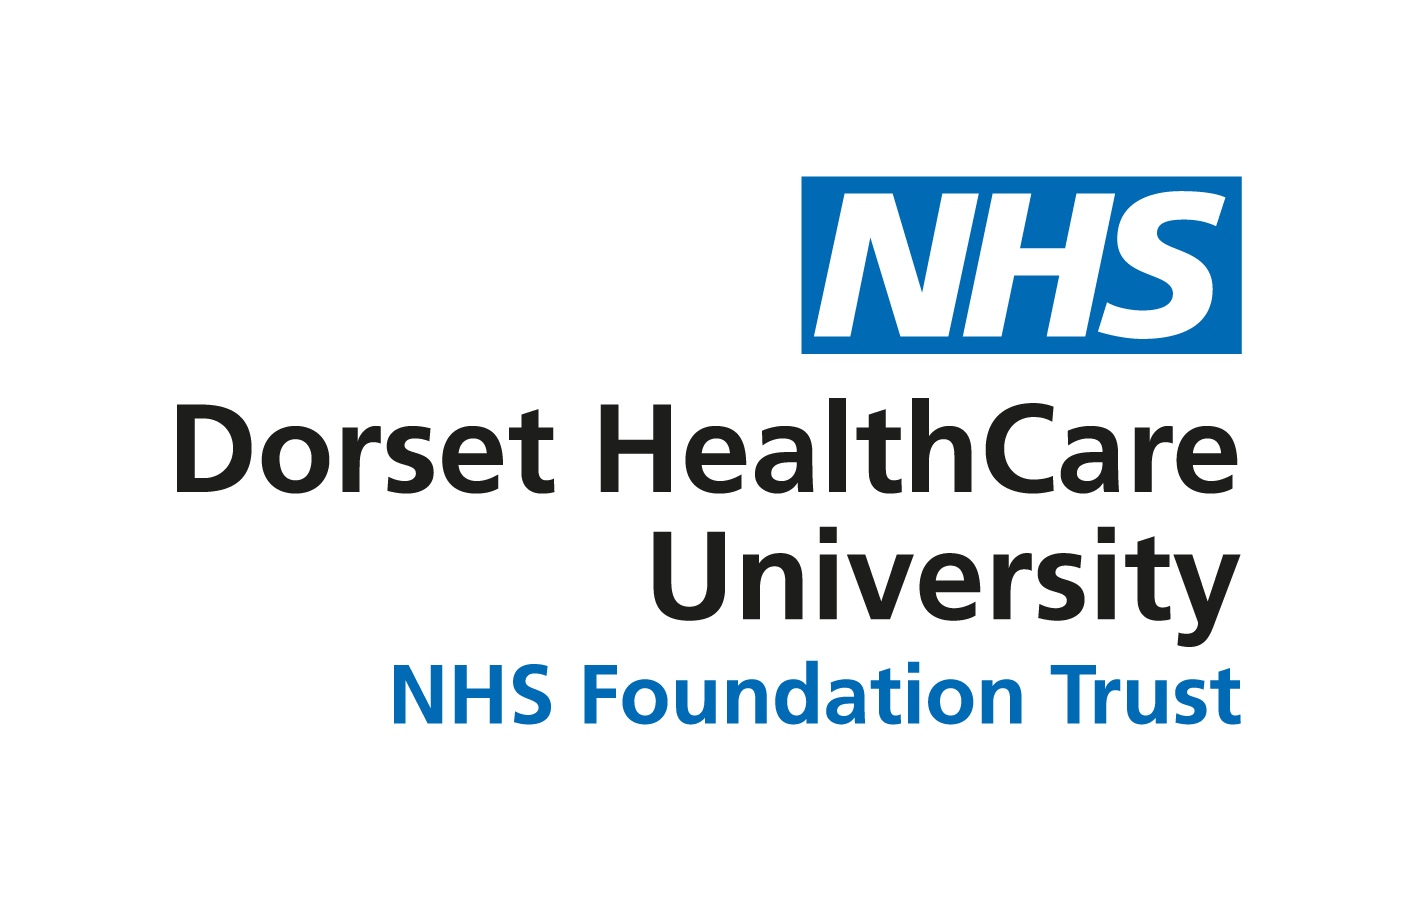 Dorset Healthcare University